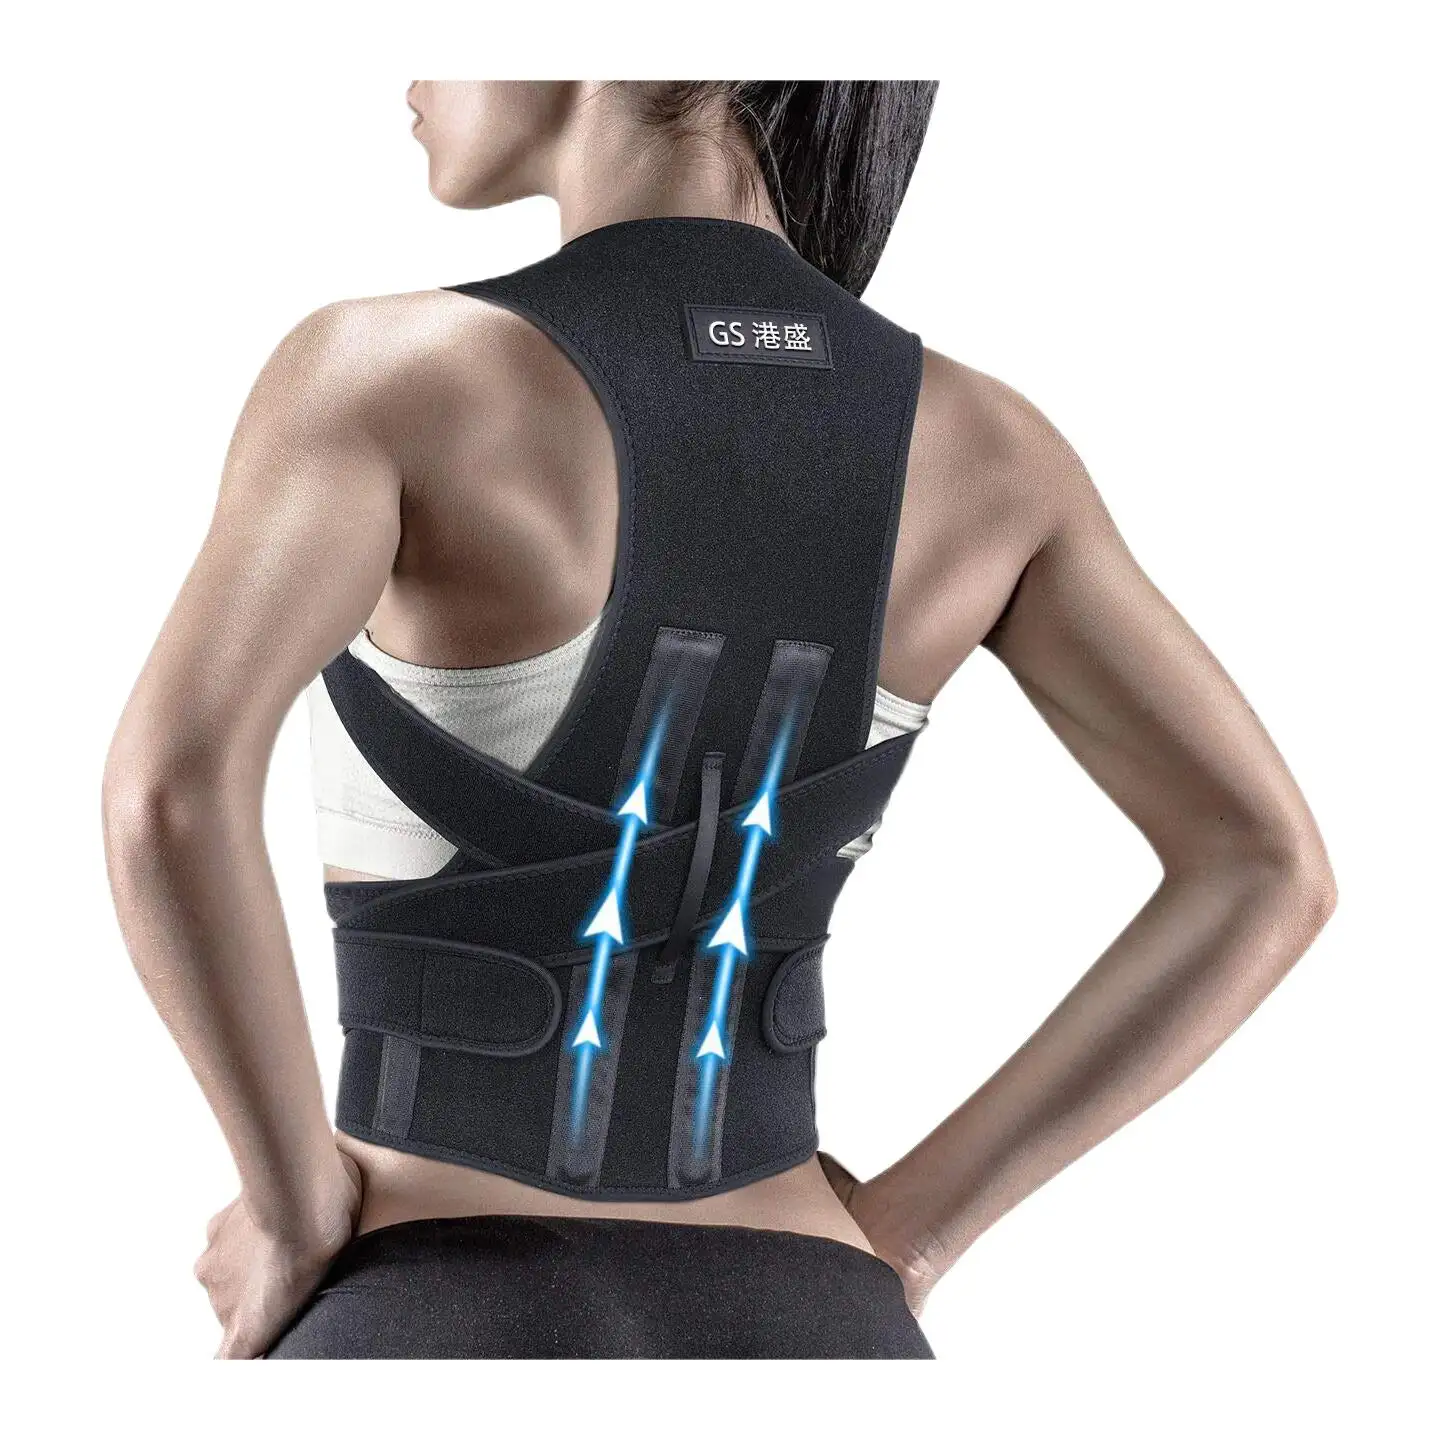 Banda de corrección de soporte para la parte superior de la espalda, Corrector de postura para soporte de clavícula y espalda, unisex, venta al por mayor